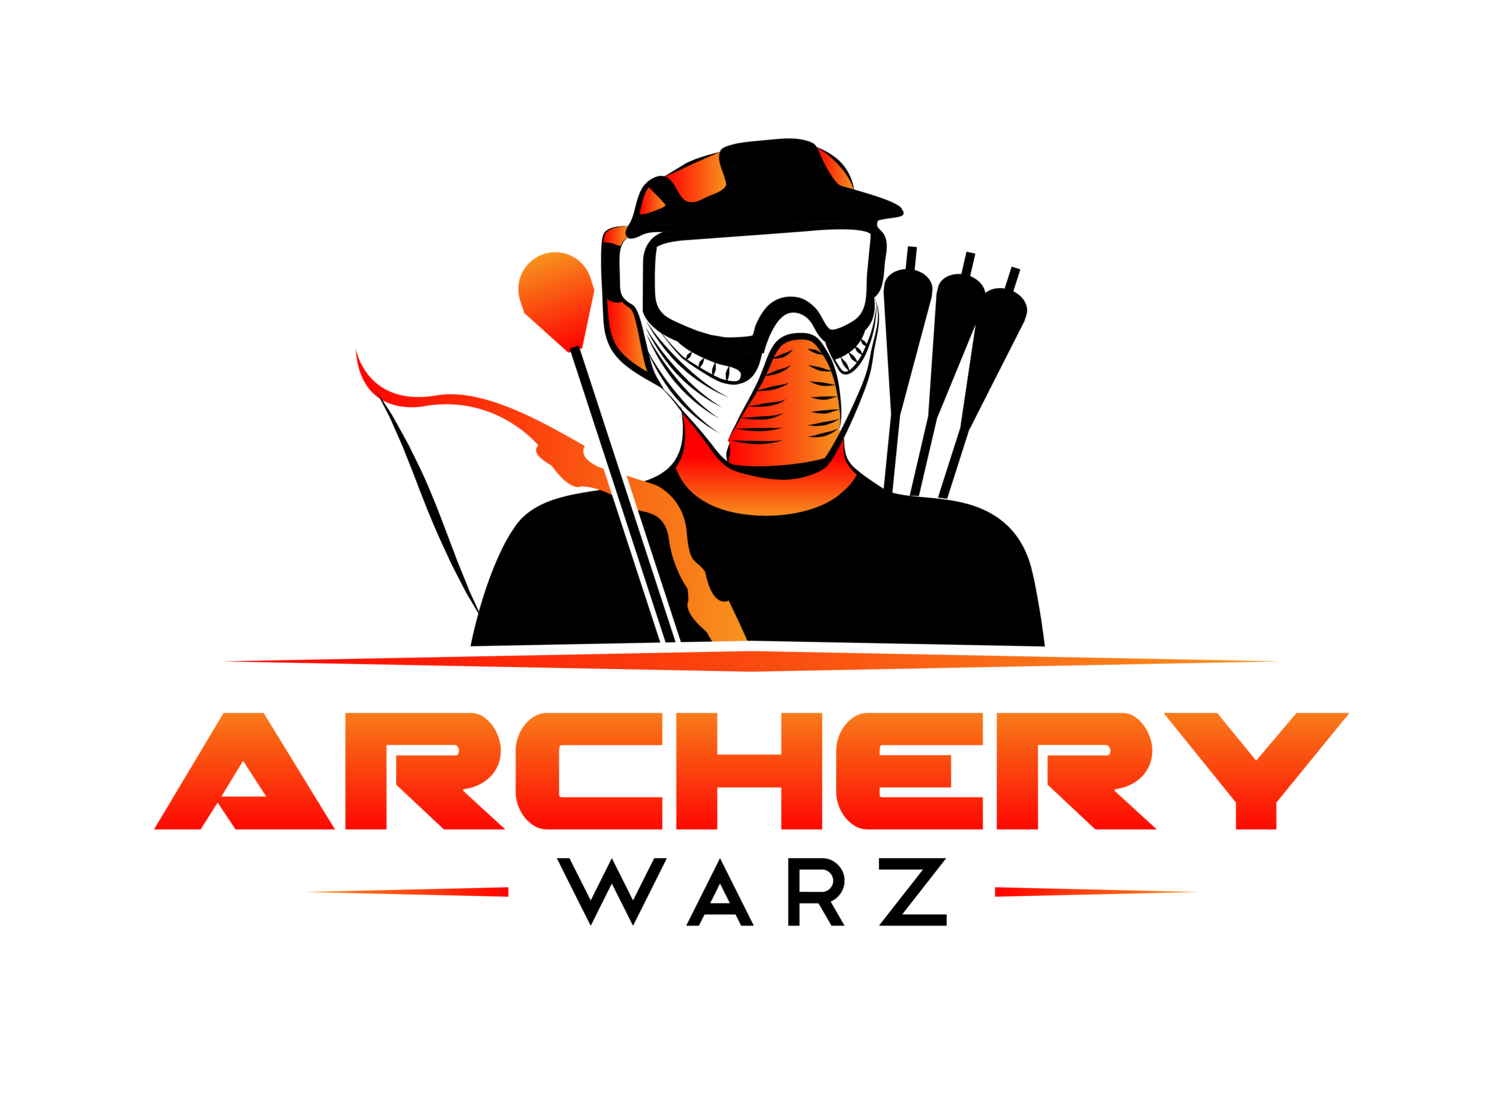 Archery Warz